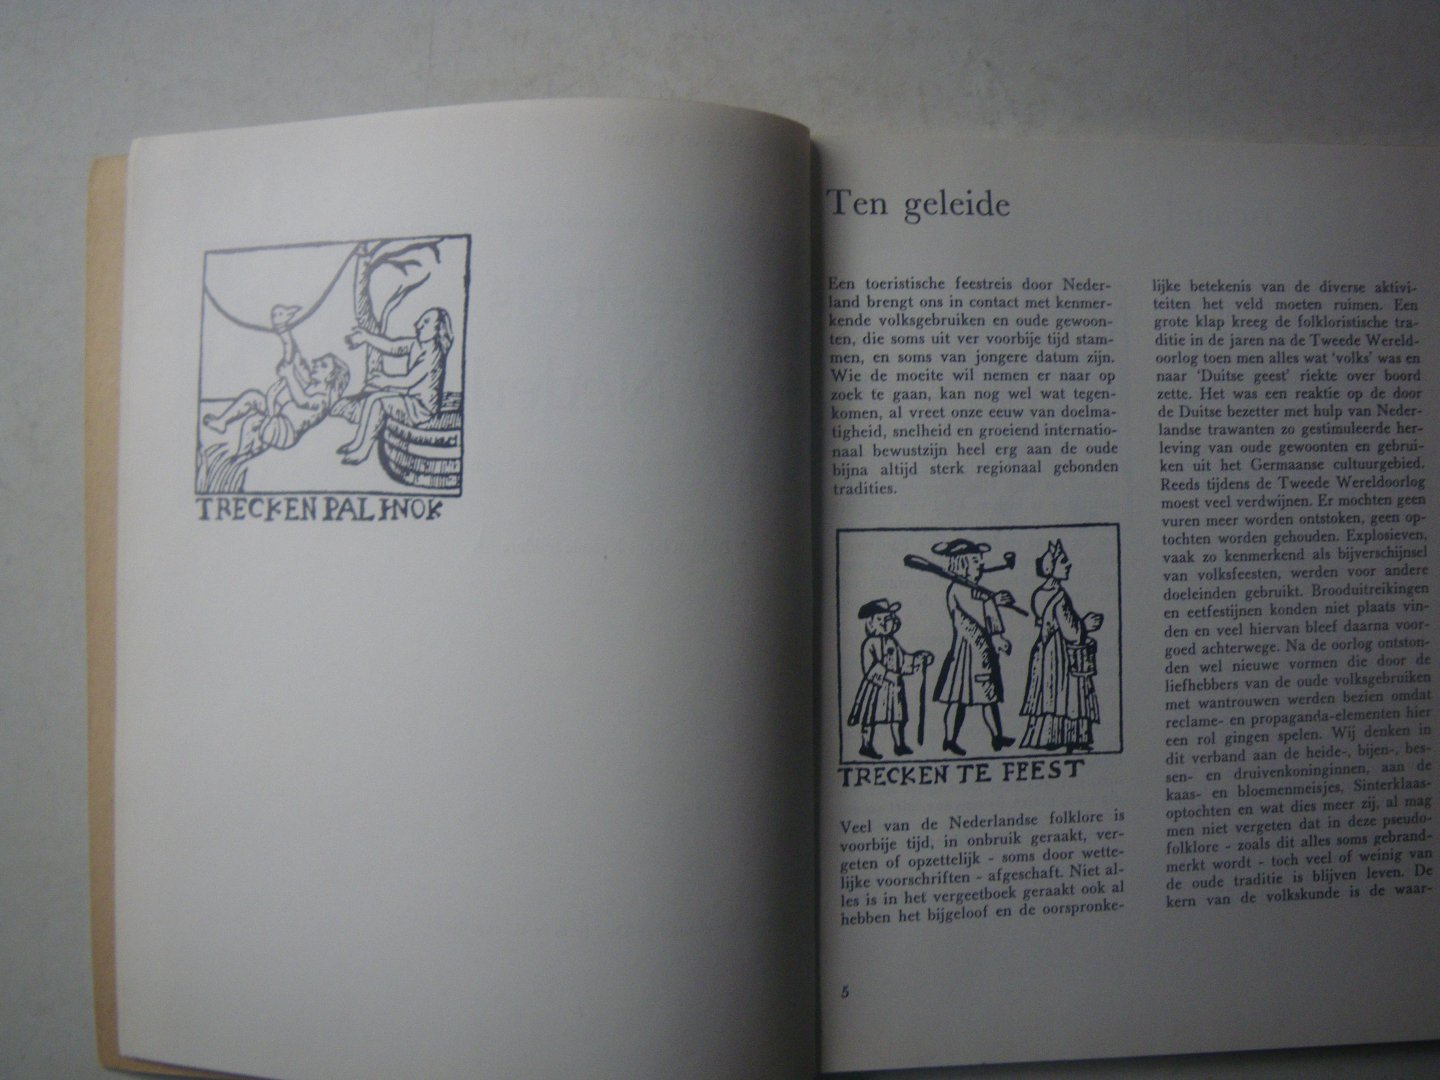 Fuchs, J.M. & Simons, W.J. - Feestreis door Nederland. Tochten langs levende folklore